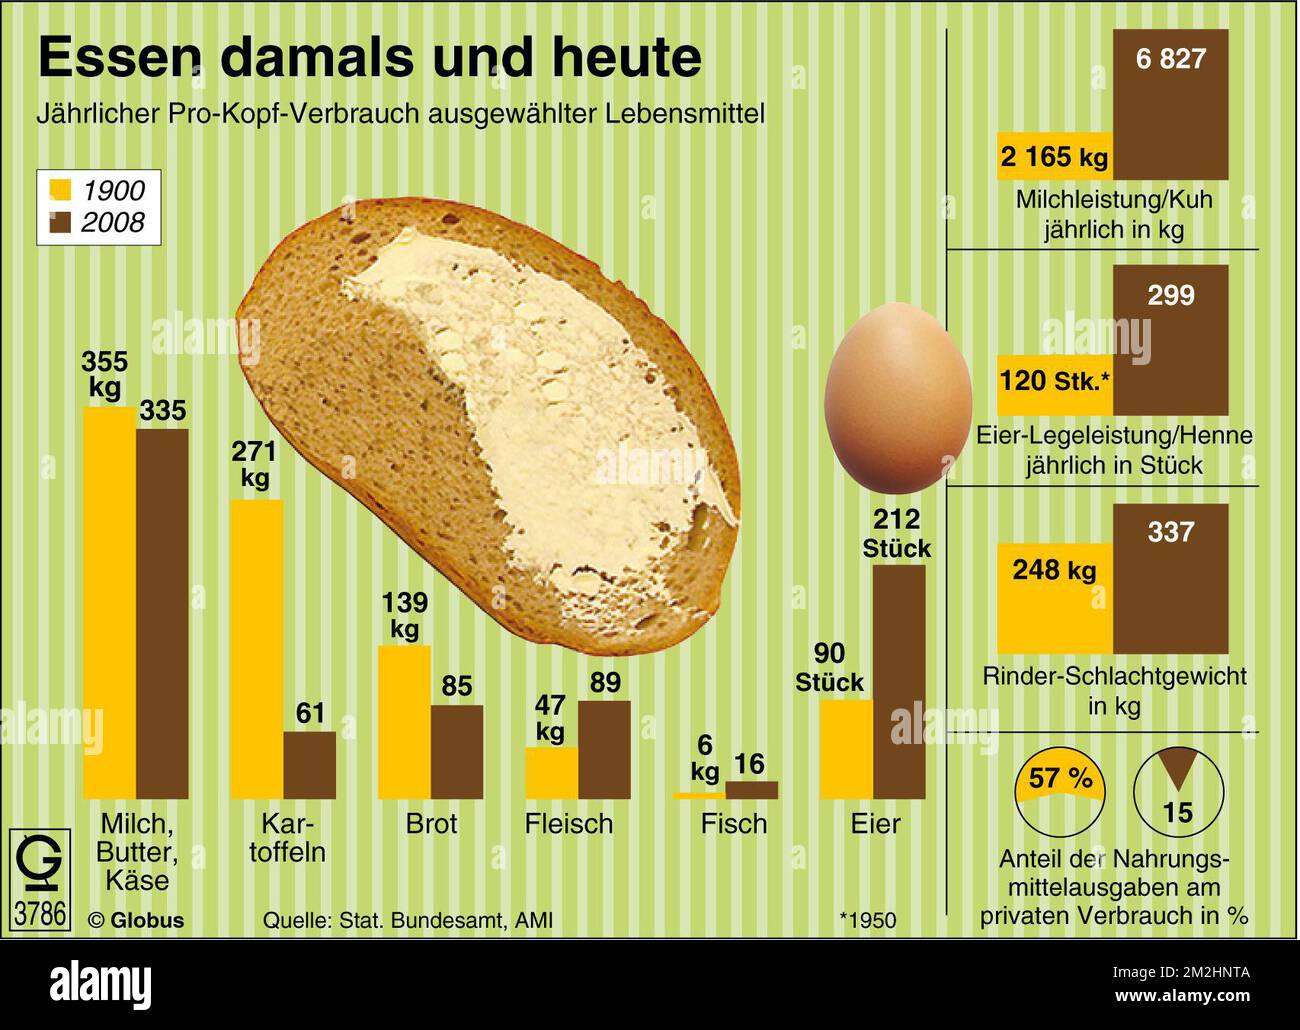 Die kulinarischen Vorlieben der Deutschen haben sich über das vergangene Jahrhundert deutslich gewandelt. Fleisch war UM 1900 für viele Menschen ein Teures Gut, das höchstens an Wochenenden auf dem Tisch stand. Entsprechend niedrig lag der Fleischverbrauch: 47 Kilogramm jährlich verzehrte der Deutsche damals im Durchschnitt. Mittlerweile ist es doppelt rapide si viel. Auch Eier und Fisch stehen heute viel öfter auf dem Speisezettel als vor rund 100 Jahren. Abgenommen Hat dagegen die Menge gegessener Kartoffeln und Getreideprodukte. Die größte Veränderung ergab sich BEI den Preisen: Statt wie 1900 Banque D'Images